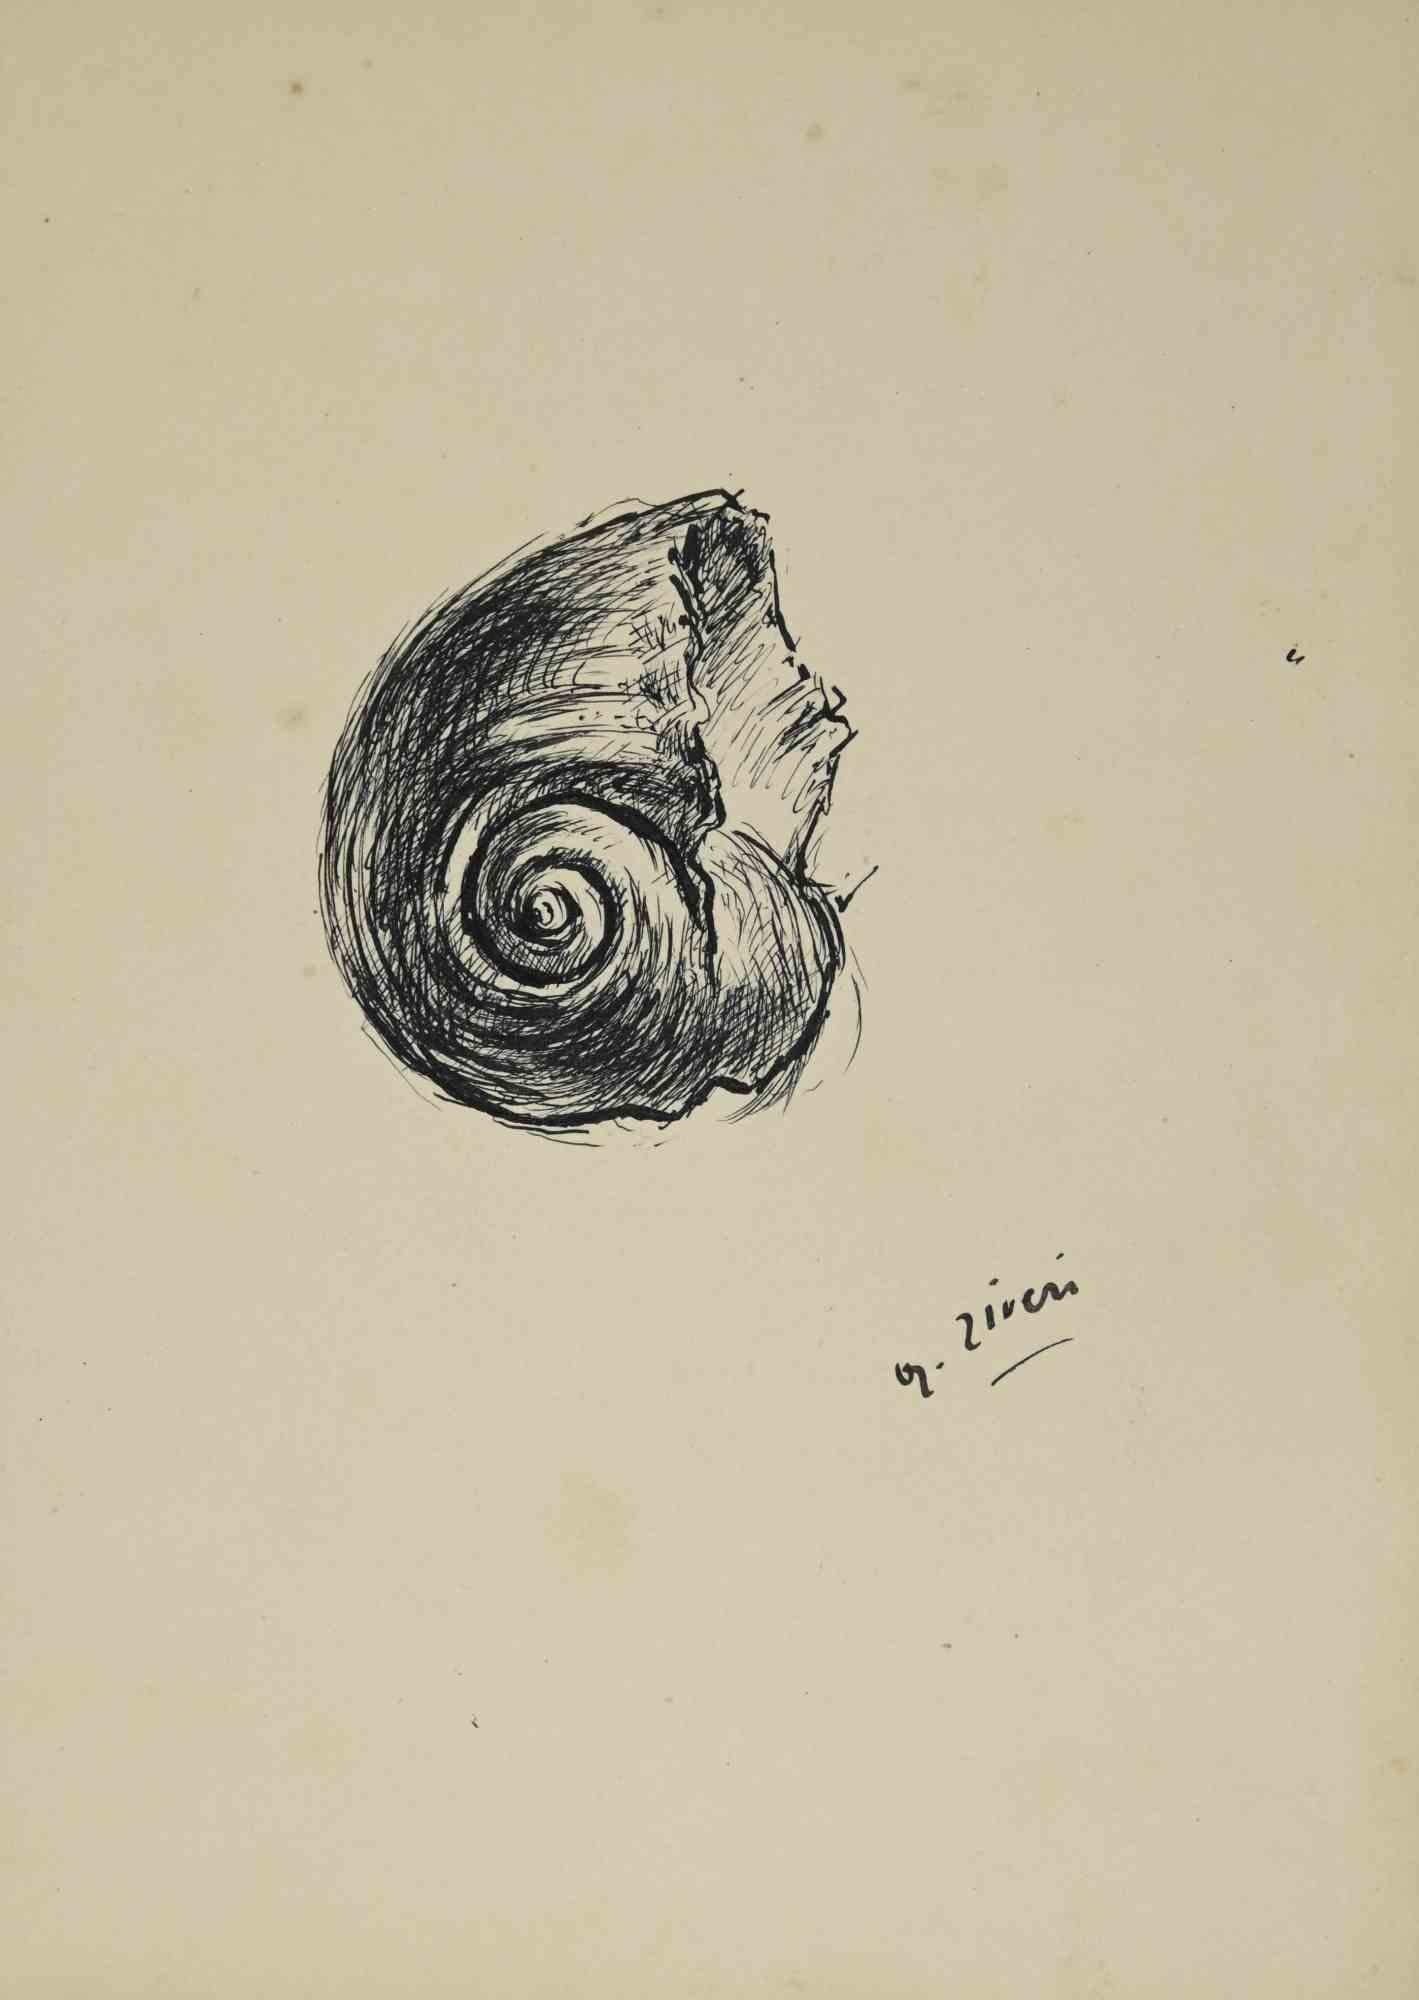 Die Muschel ist eine Zeichnung von Alberto Ziveri aus den 1930er Jahren.

Tinte auf Papier.

Handsigniert.

In gutem Zustand mit leichten Stockflecken.

Das Kunstwerk wird durch geschickte Striche meisterhaft dargestellt.

Alberto Ziveri (Rom, 1908